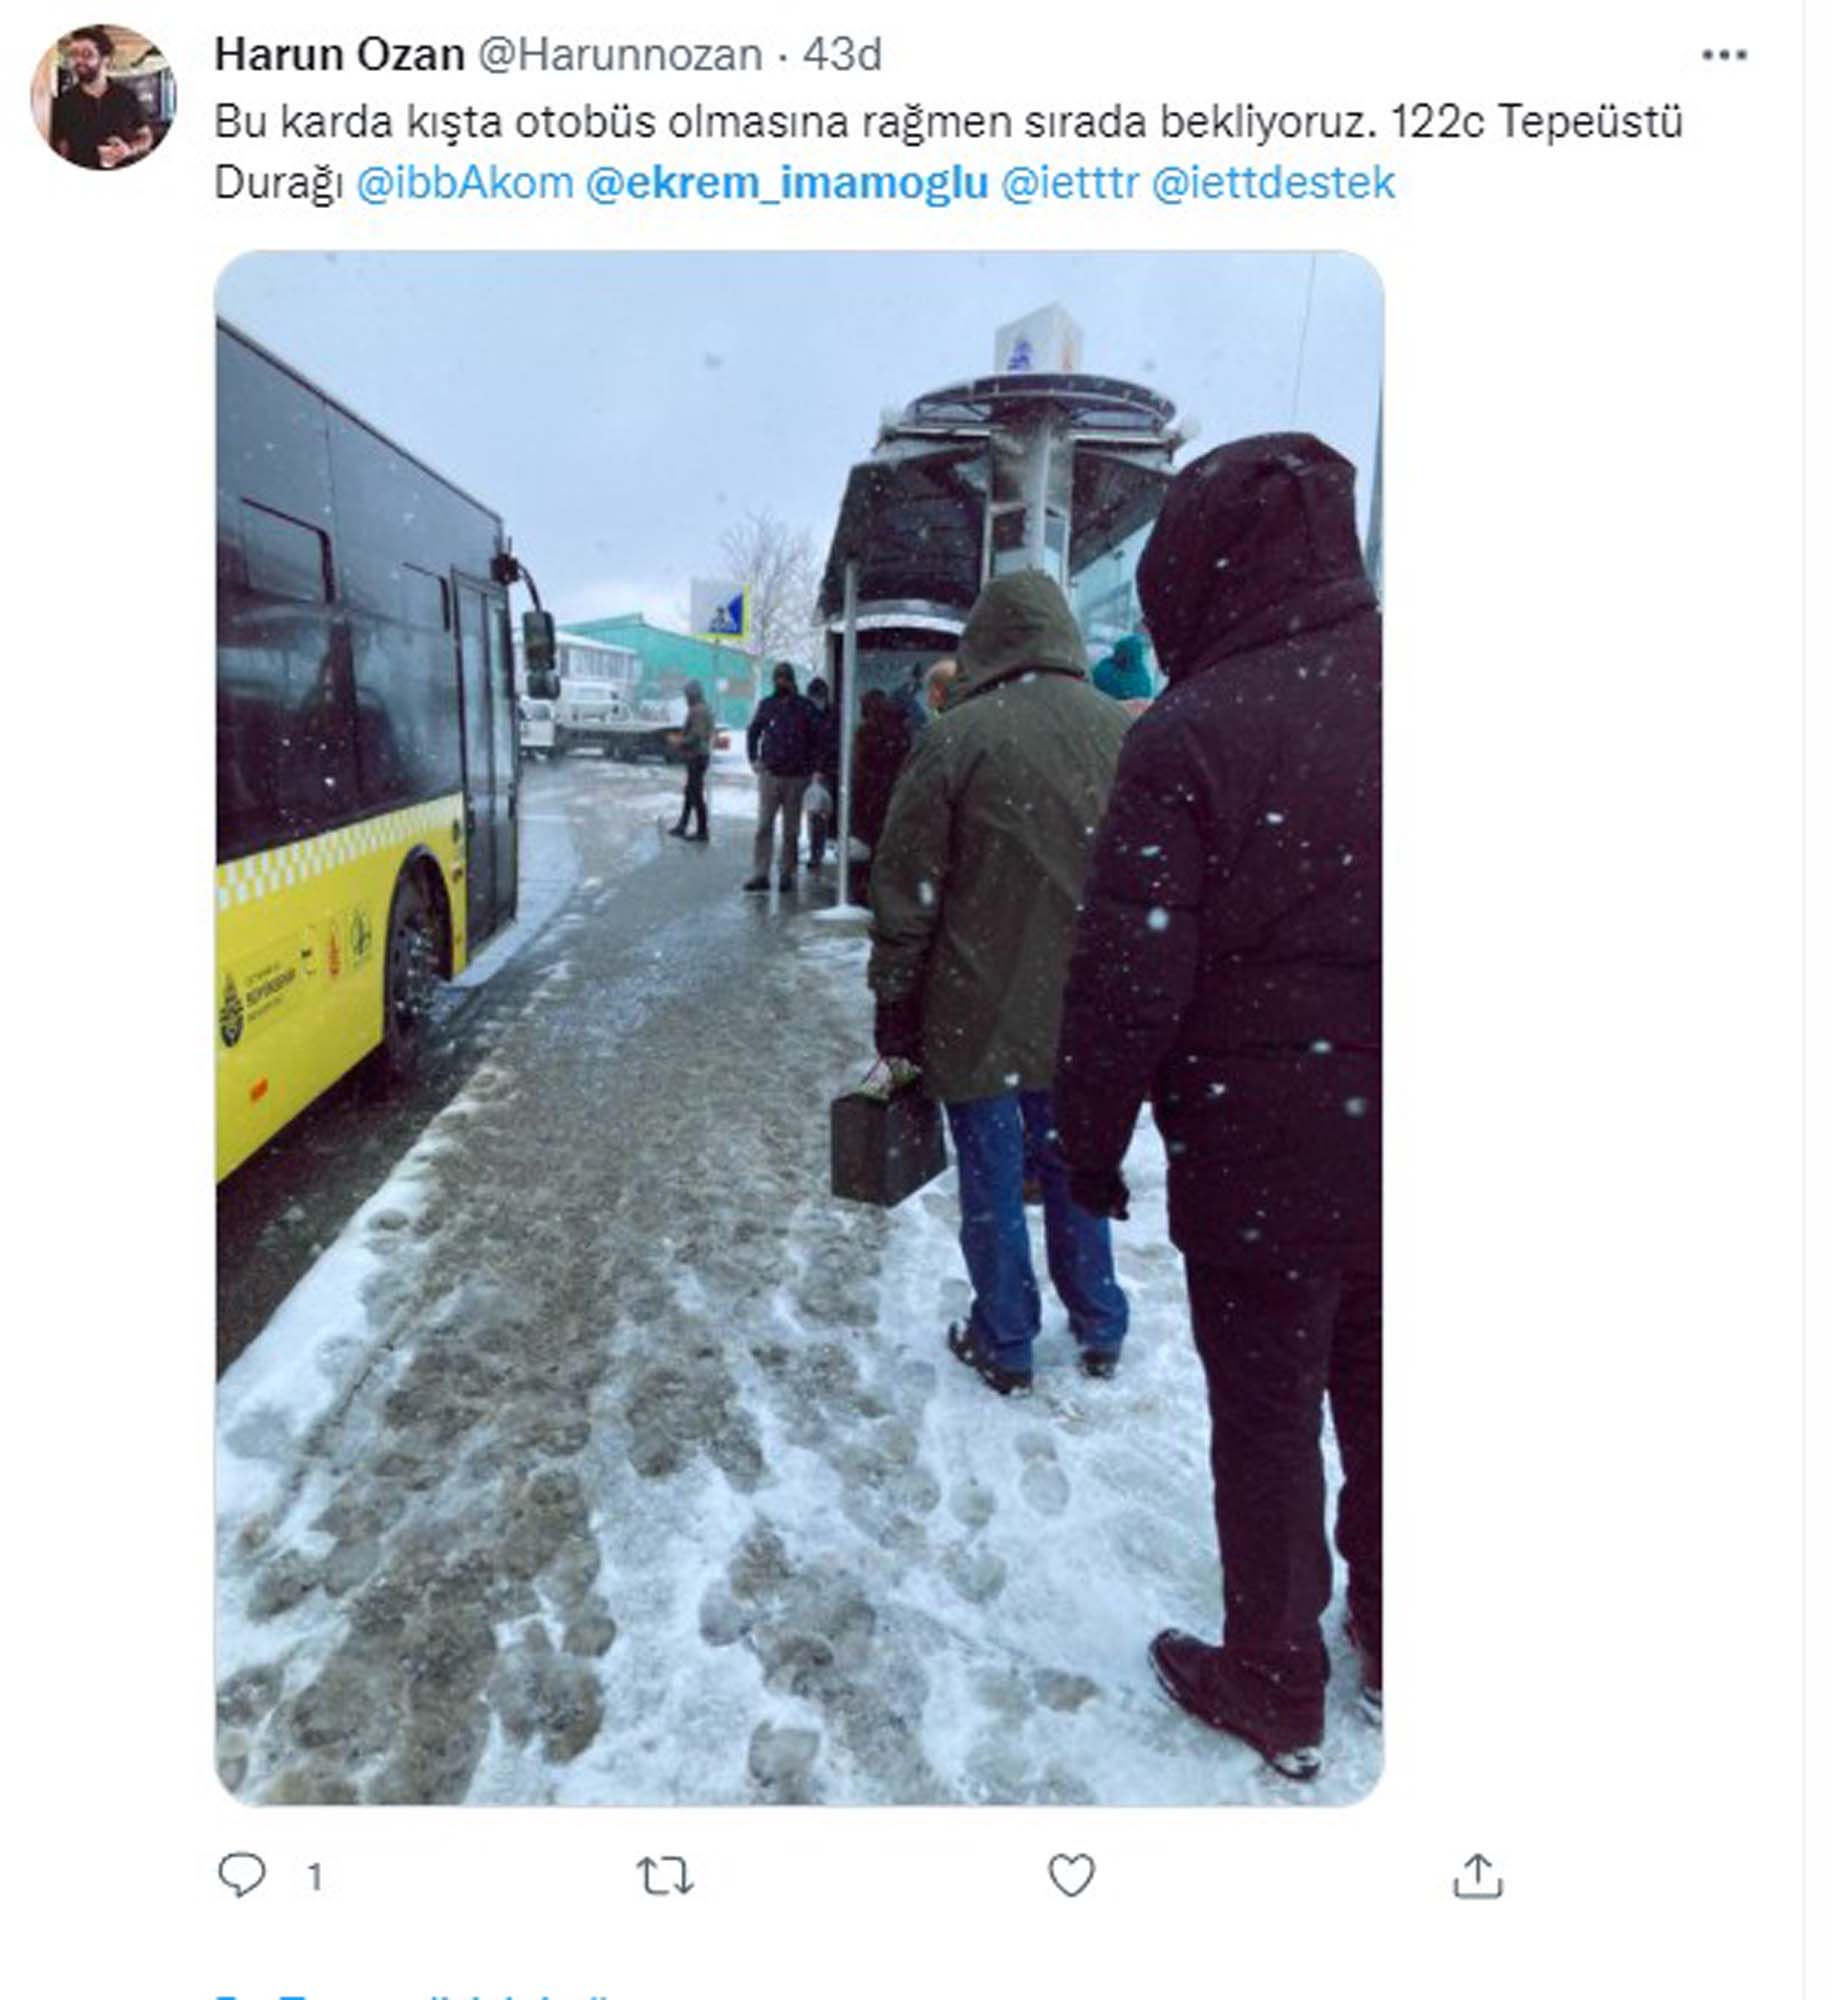 Şaka gibi ama gerçek! Vali Yerlikaya toplu taşıma kullanın dedi, İmamoğlu seferleri iptal etti! Vatandaş işe gidemeyince, kar çilesi tekerrür etti!